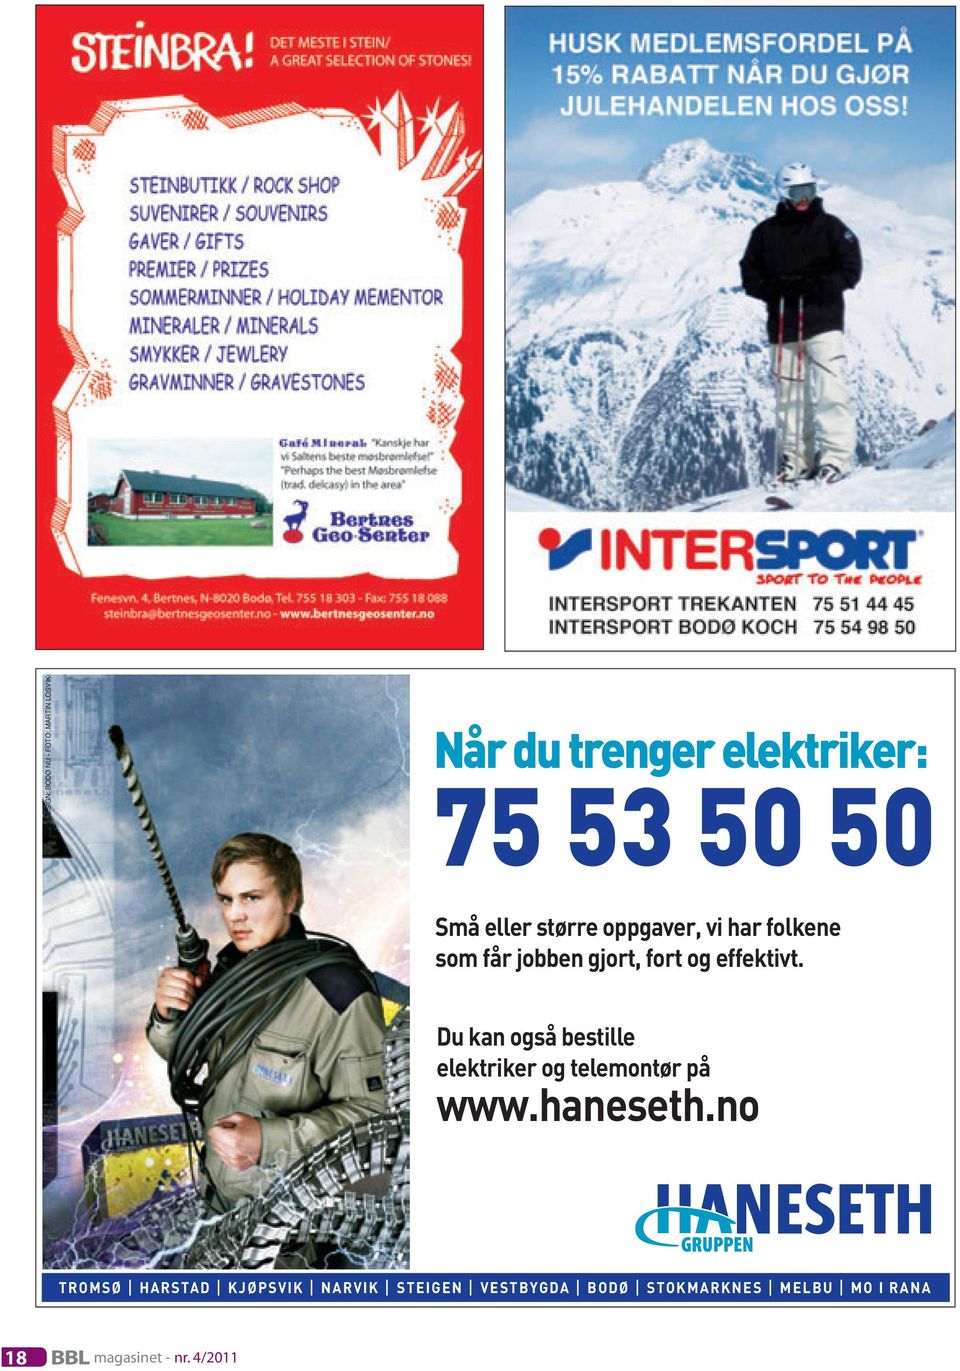 Du kan også bestille elektriker og telemontør på www.haneseth.